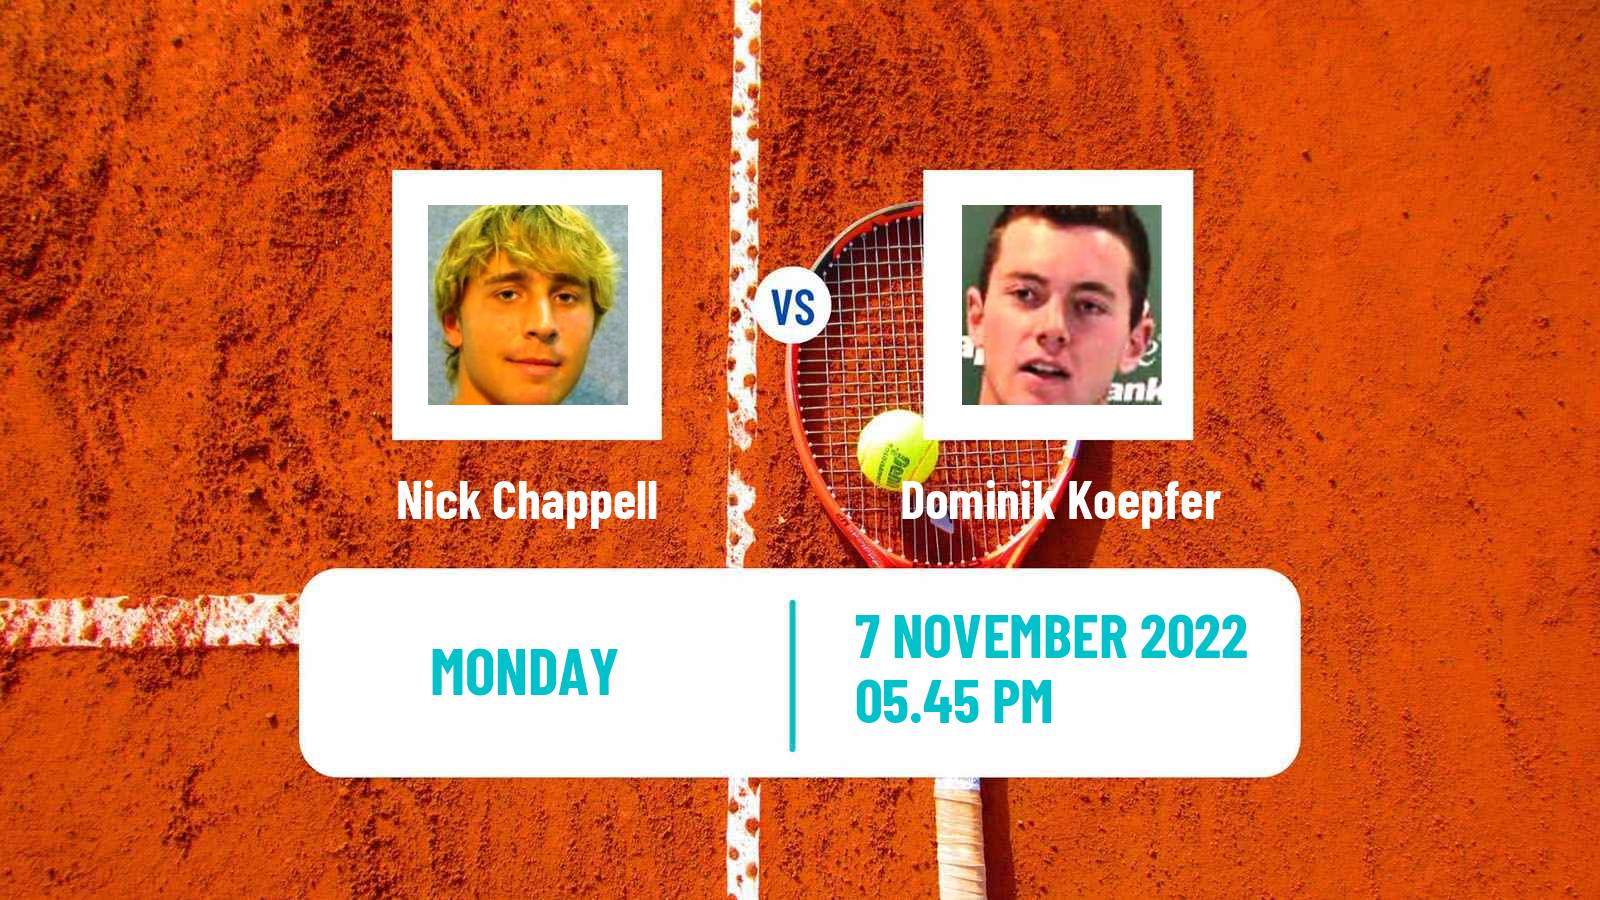 Tennis ATP Challenger Nick Chappell - Dominik Koepfer